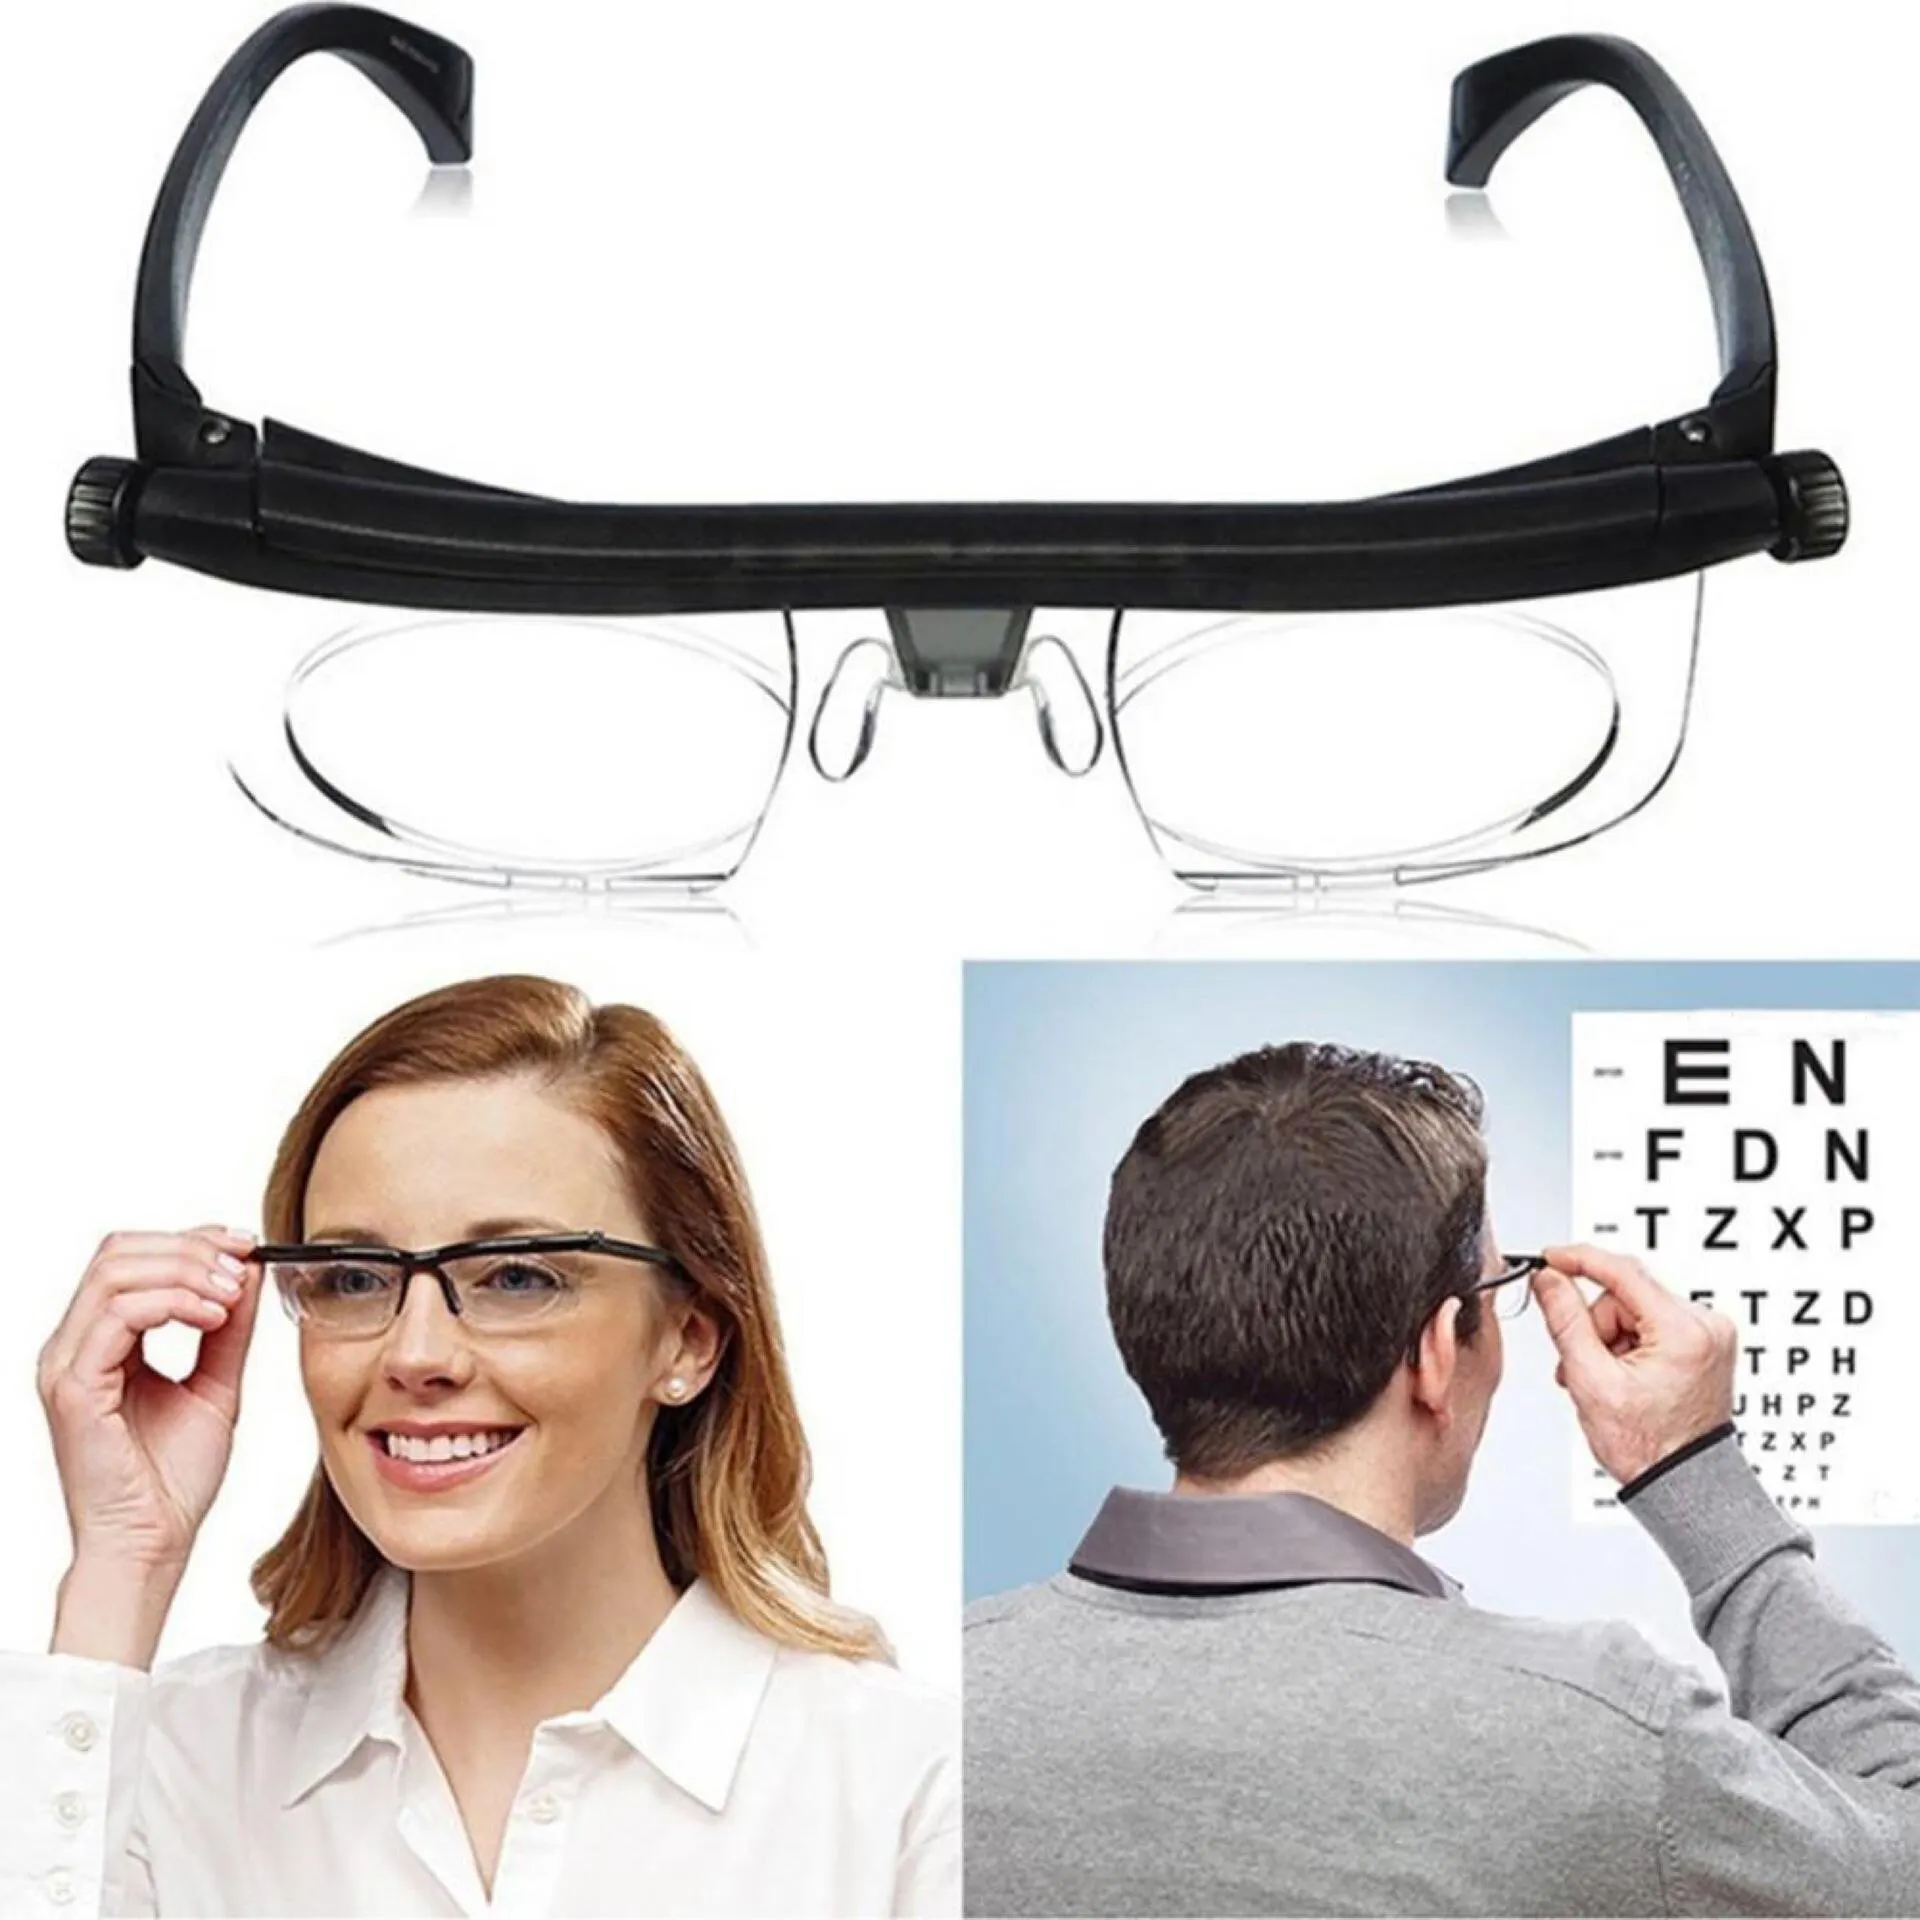 نظارات جديدة لقصر النظر بتركيز بؤري قابل للتعديل-نظارات قراءة من 6D إلى + 3D مع تغليف للرؤية